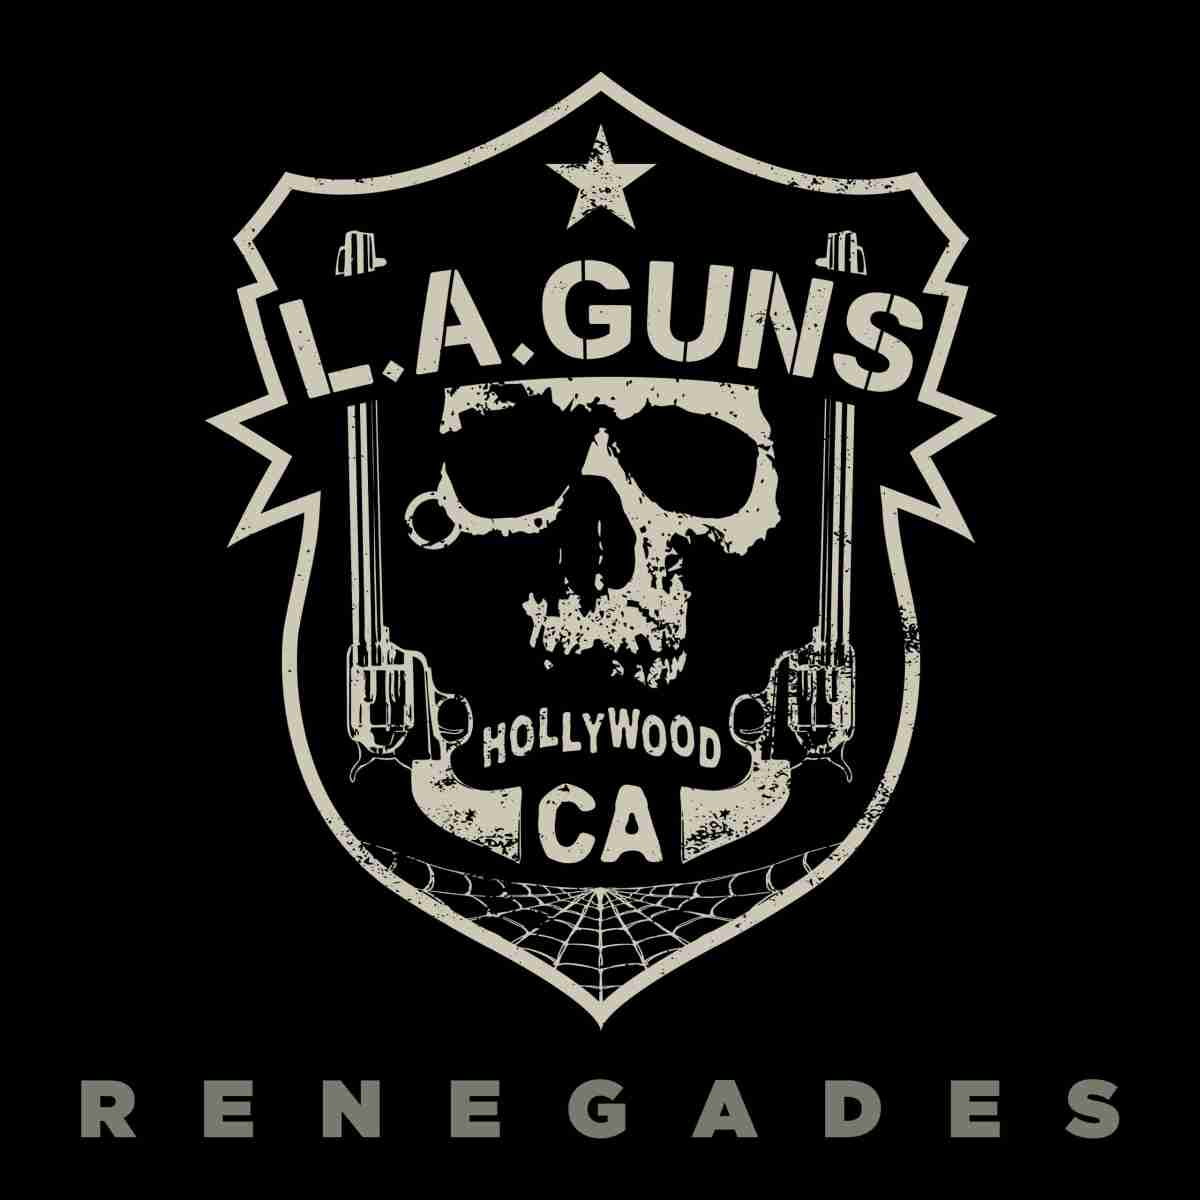 la guns - renegades - album cover